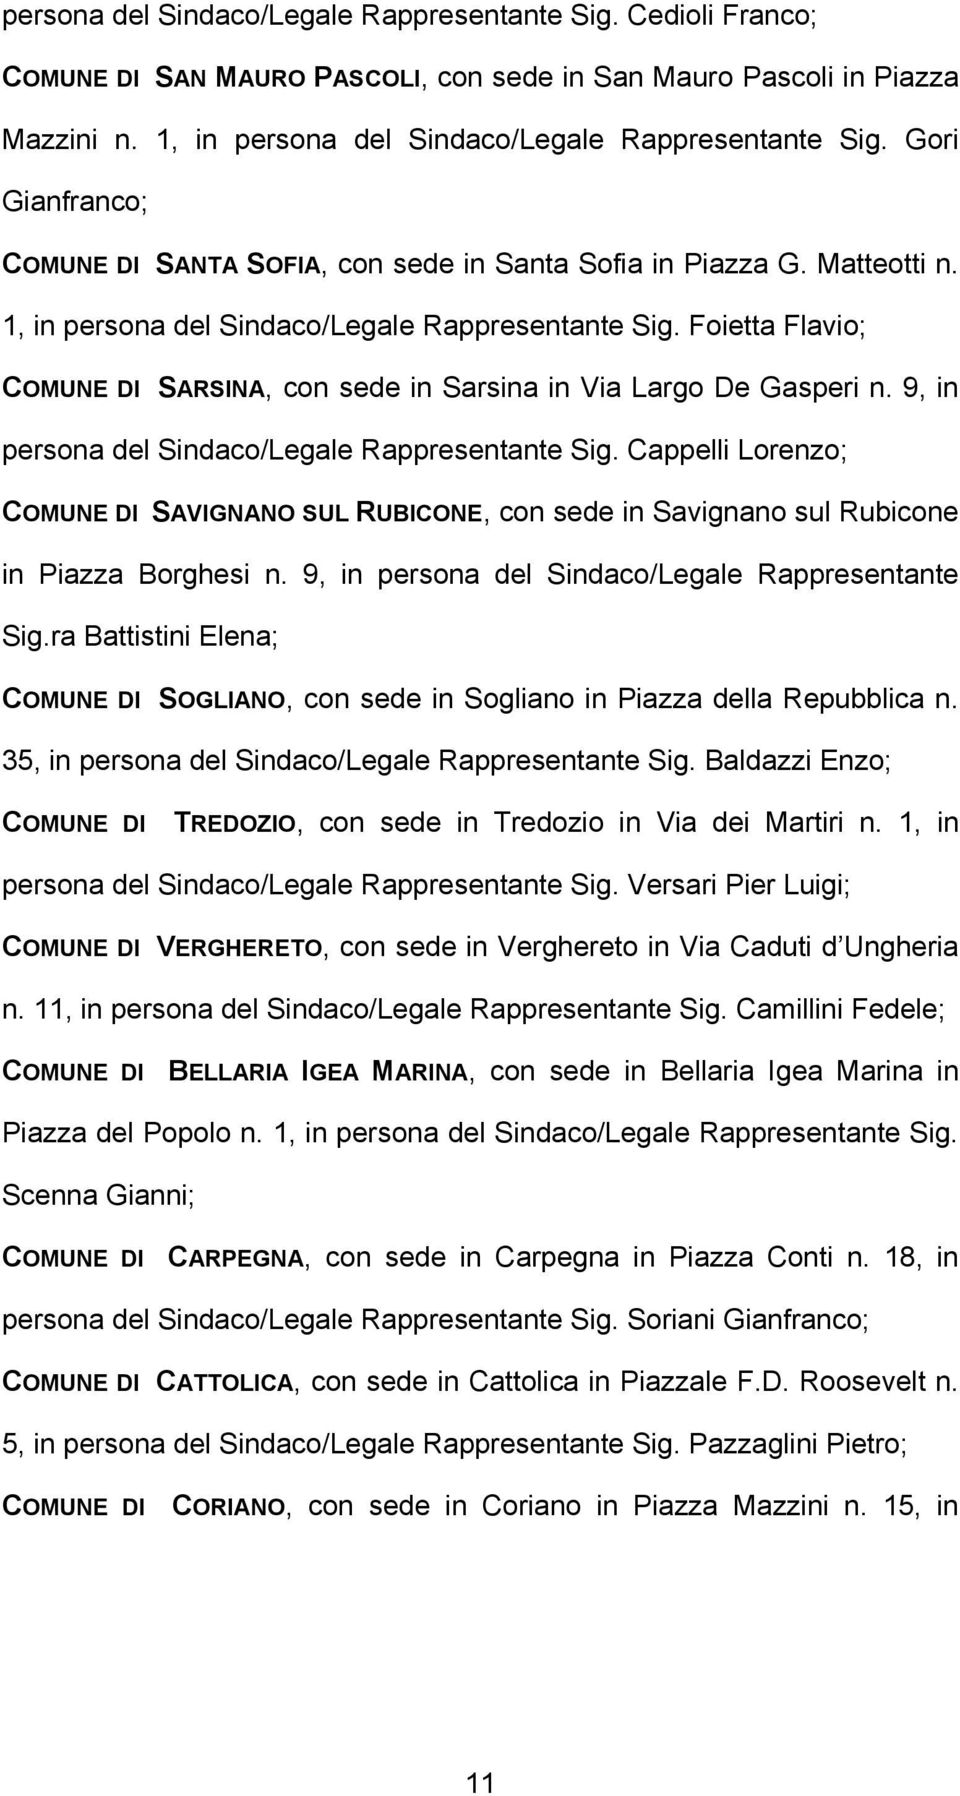 Foietta Flavio; COMUNE DI SARSINA, con sede in Sarsina in Via Largo De Gasperi n. 9, in persona del Sindaco/Legale Rappresentante Sig.